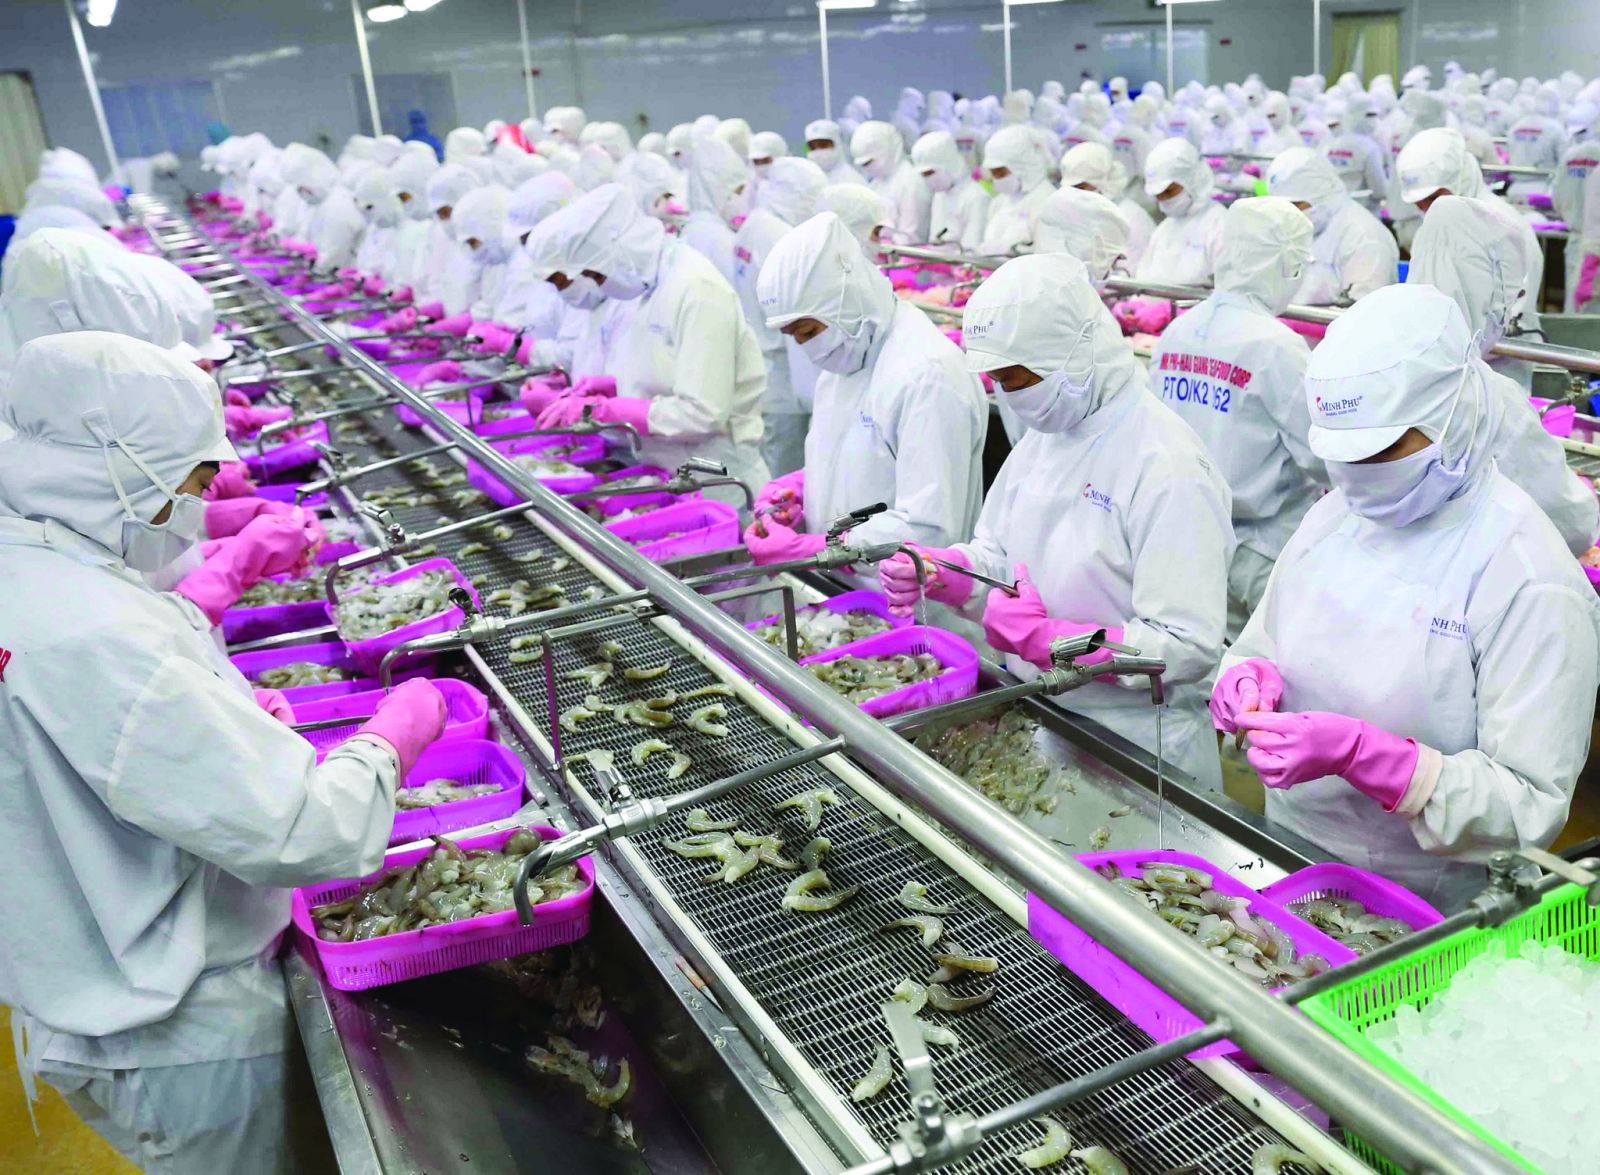  Chế biến sản phẩm tôm xuất khẩu tại nhà máy của Tập đoàn Thủy sản Minh Phú tỉnh Cà Mau. (Ảnh: TTX)